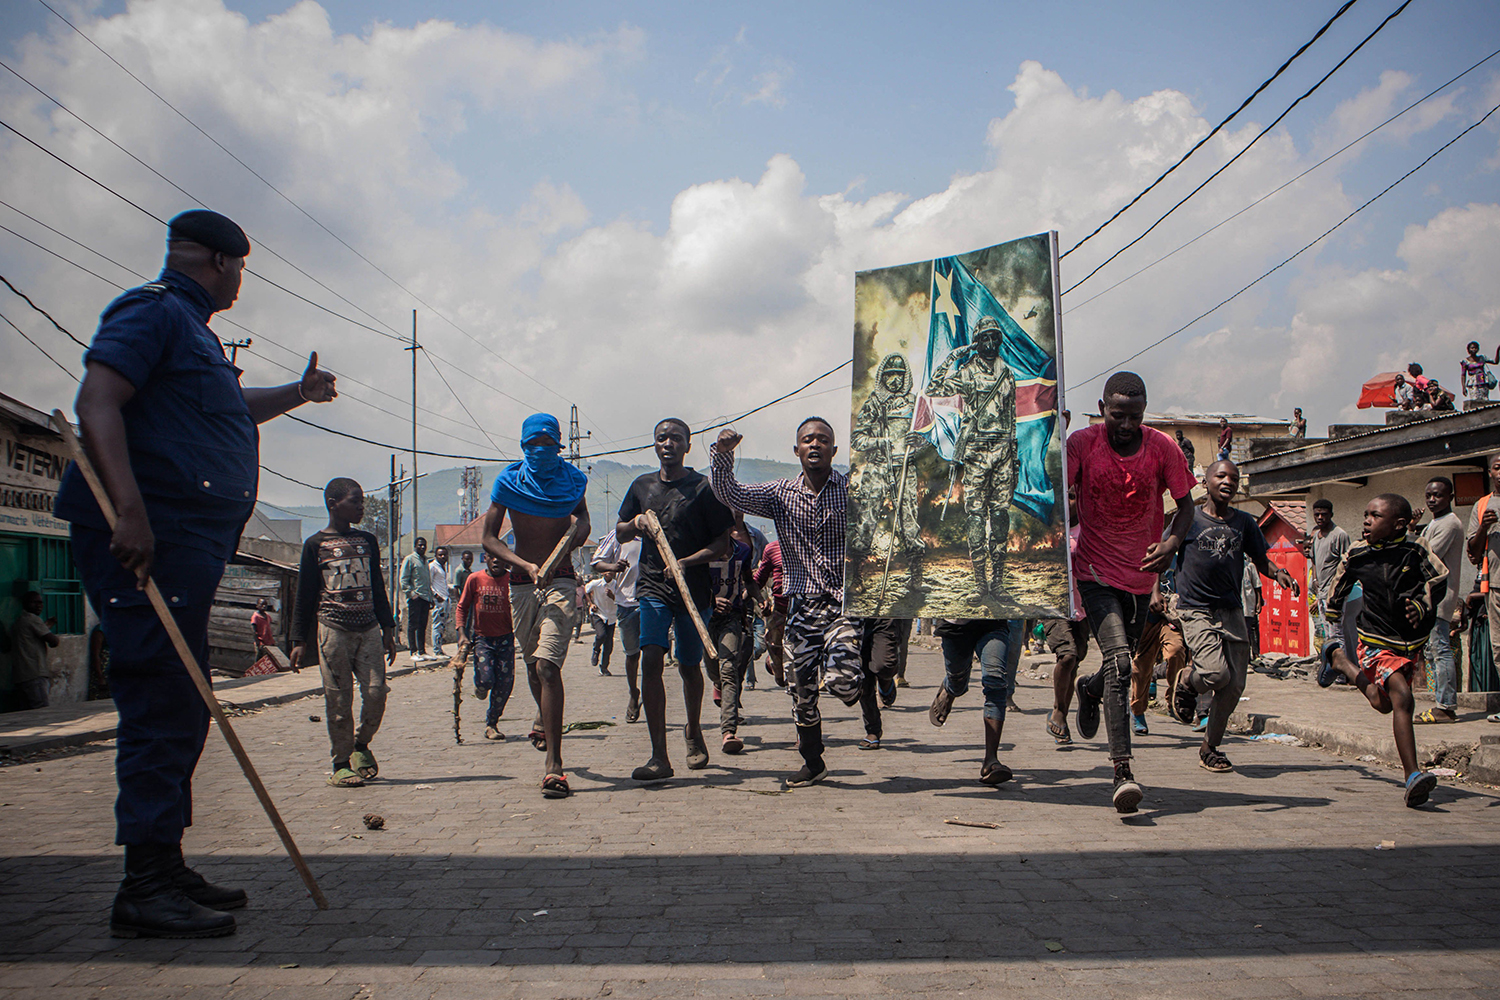 Los manifestantes llevan un cartel en honor a las fuerzas armadas de la República Democrática del Congo durante una protesta en Goma el 15 de junio. Varios miles de personas se manifestaron para mostrar su apoyo al ejército congoleño.